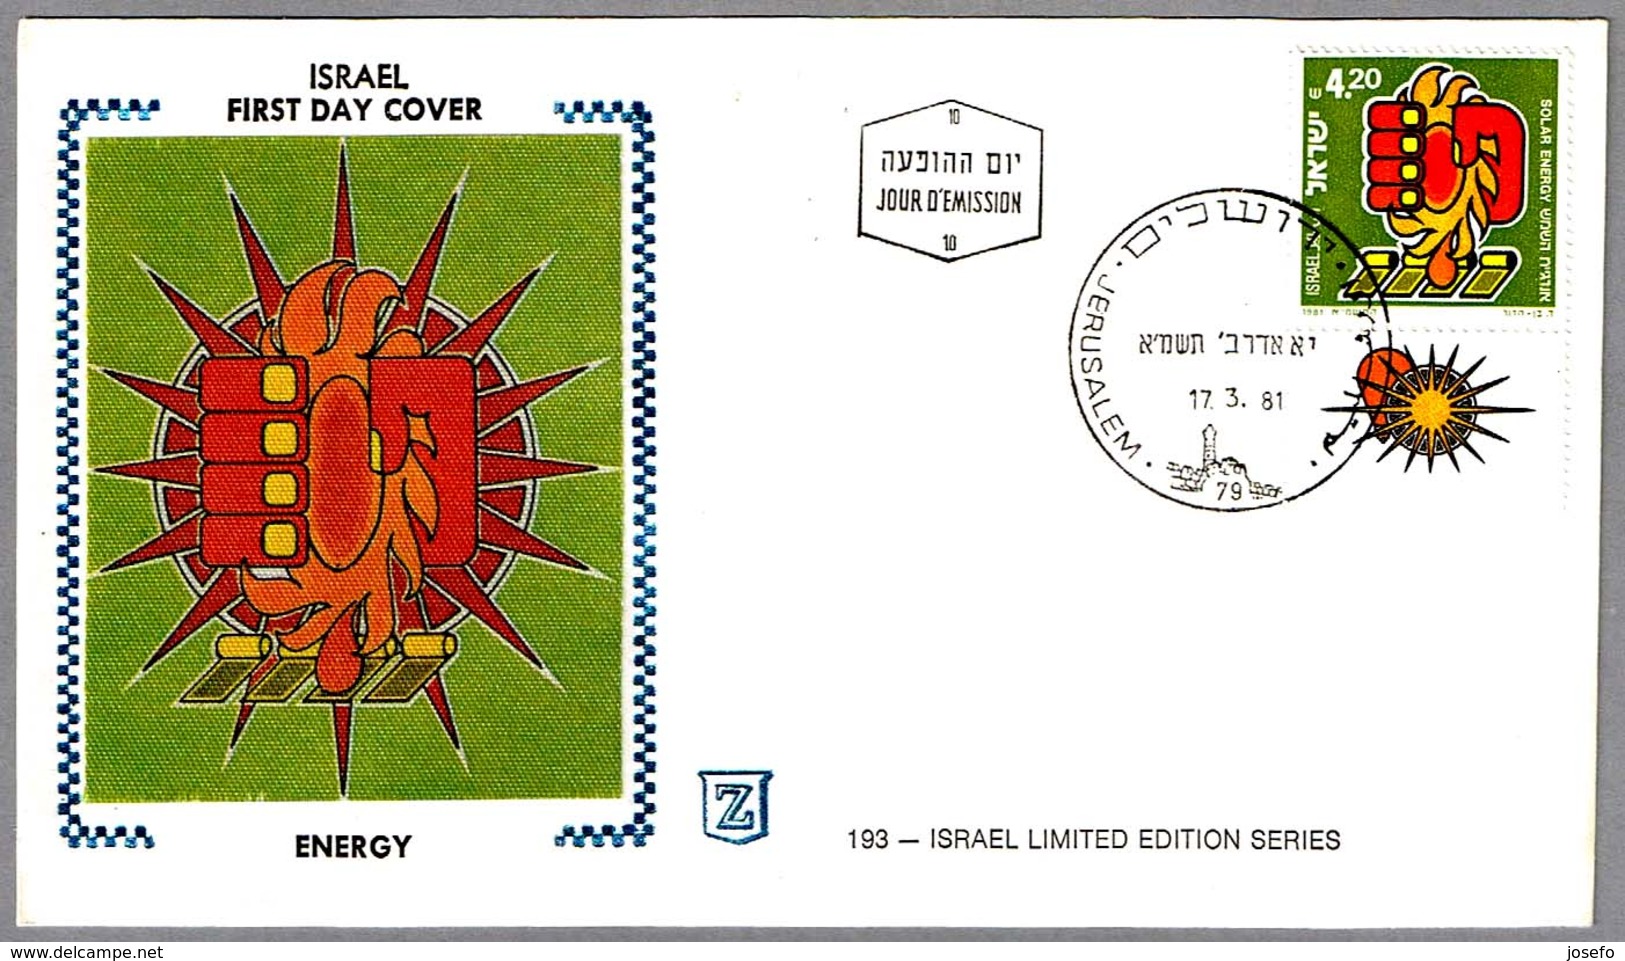 ENERGIA SOLAR - SOLAR ENERGY. SPD/FDC Jerusalem 1981 - Protección Del Medio Ambiente Y Del Clima